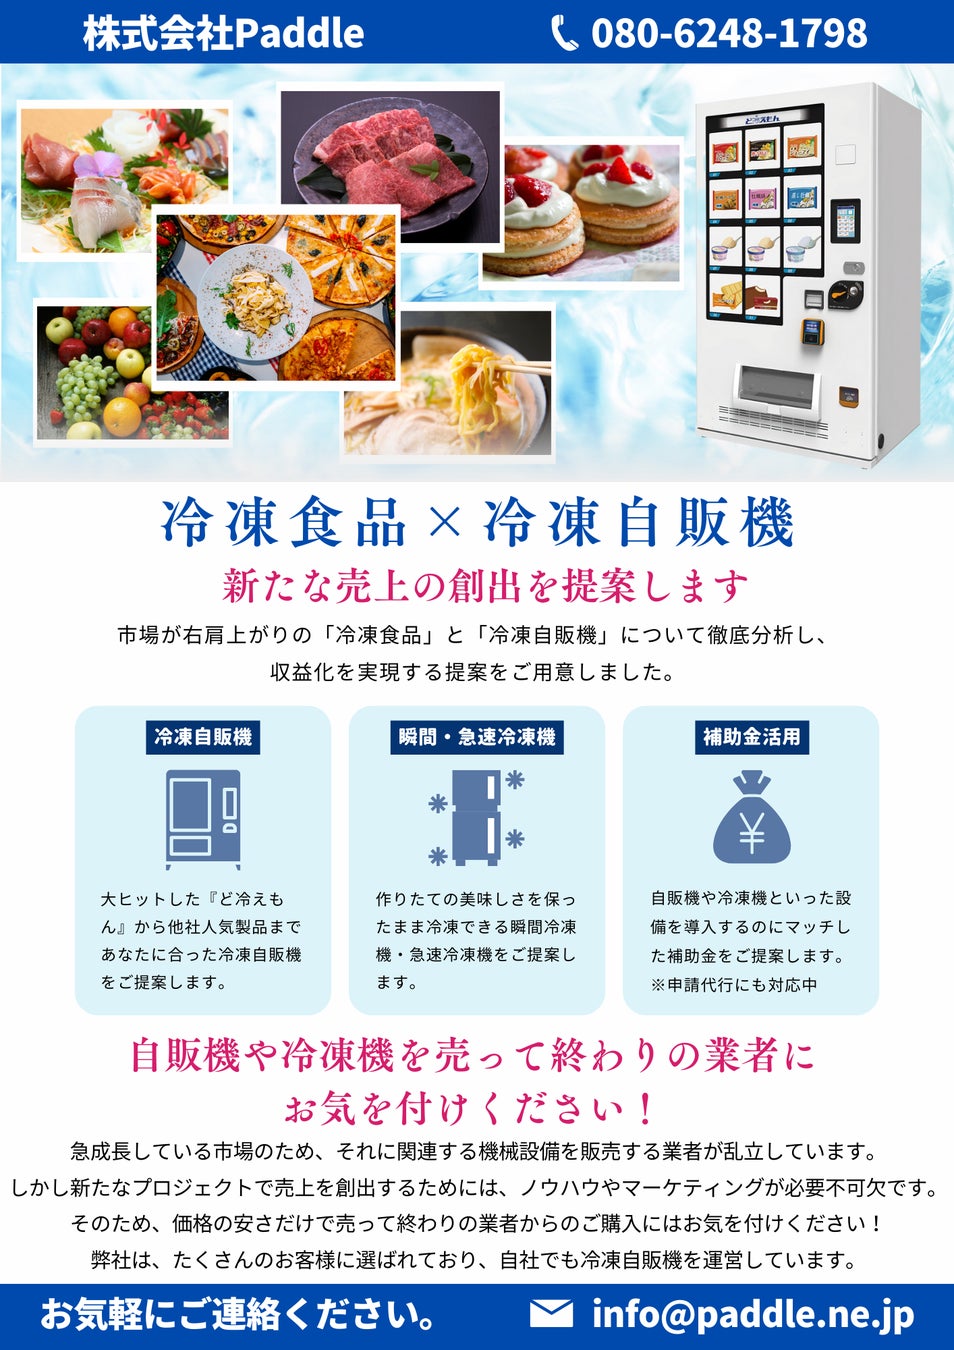 【大阪でグルメ自販機の販売スタート】補助金を活用して“グルメ自販機”の導入をPaddleがフルサポートします！